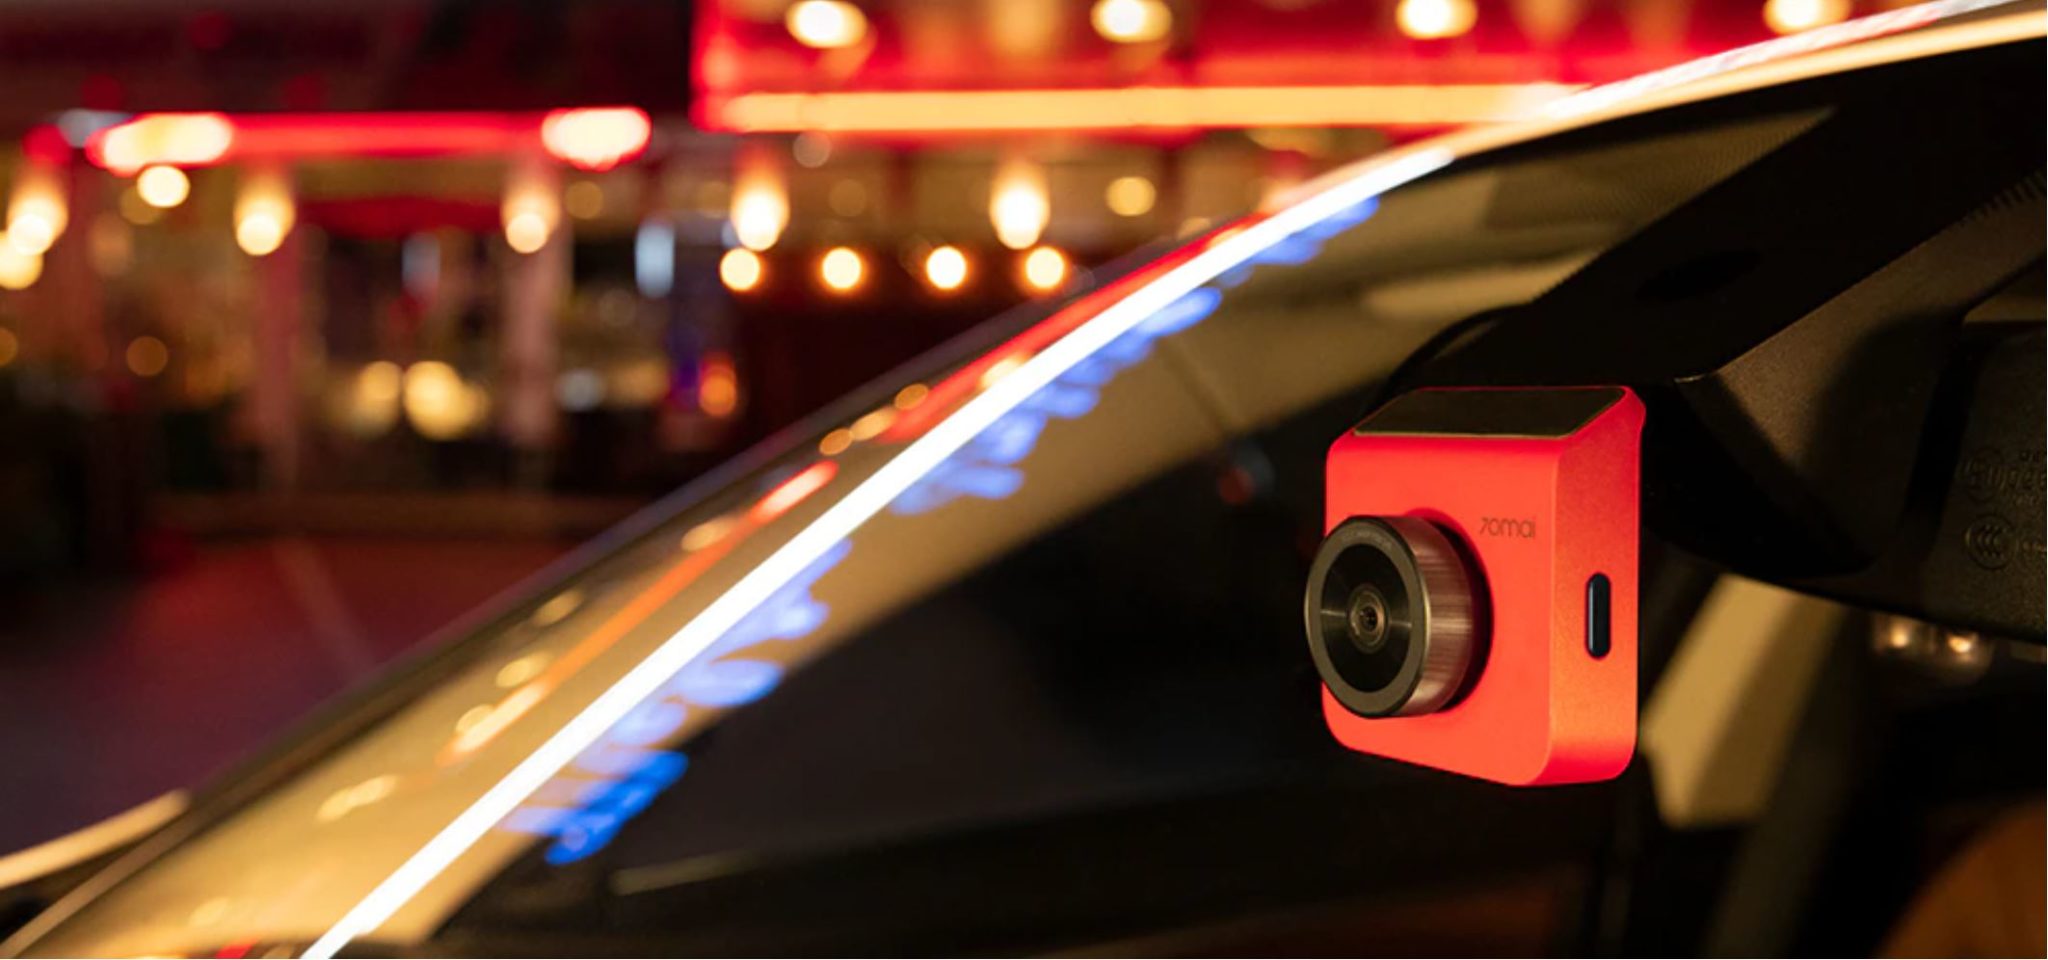 Pomysły prezentowe z AliExpress - kupuj w Black Friday - kamera samochodowa 70mai Dash Cam A400